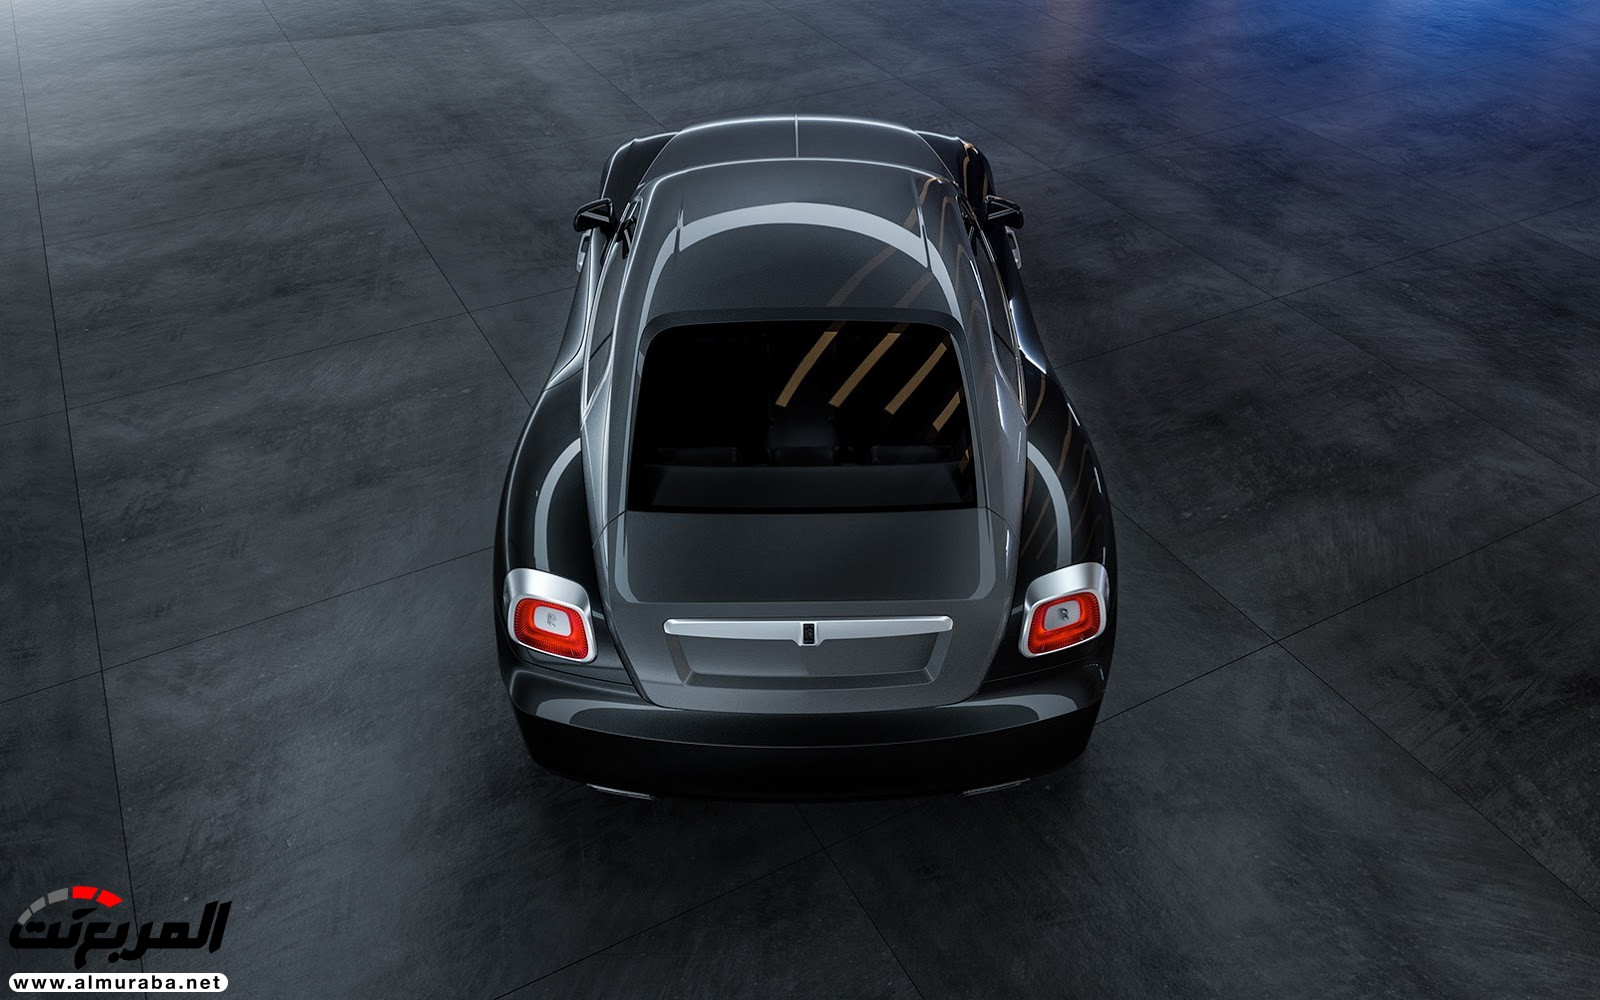 "صور افتراضية" لما يمكن أن تبدو عليه "رولز رويس" رايث كوبيه 2020 Rolls-Royce Wraith Coupe 60